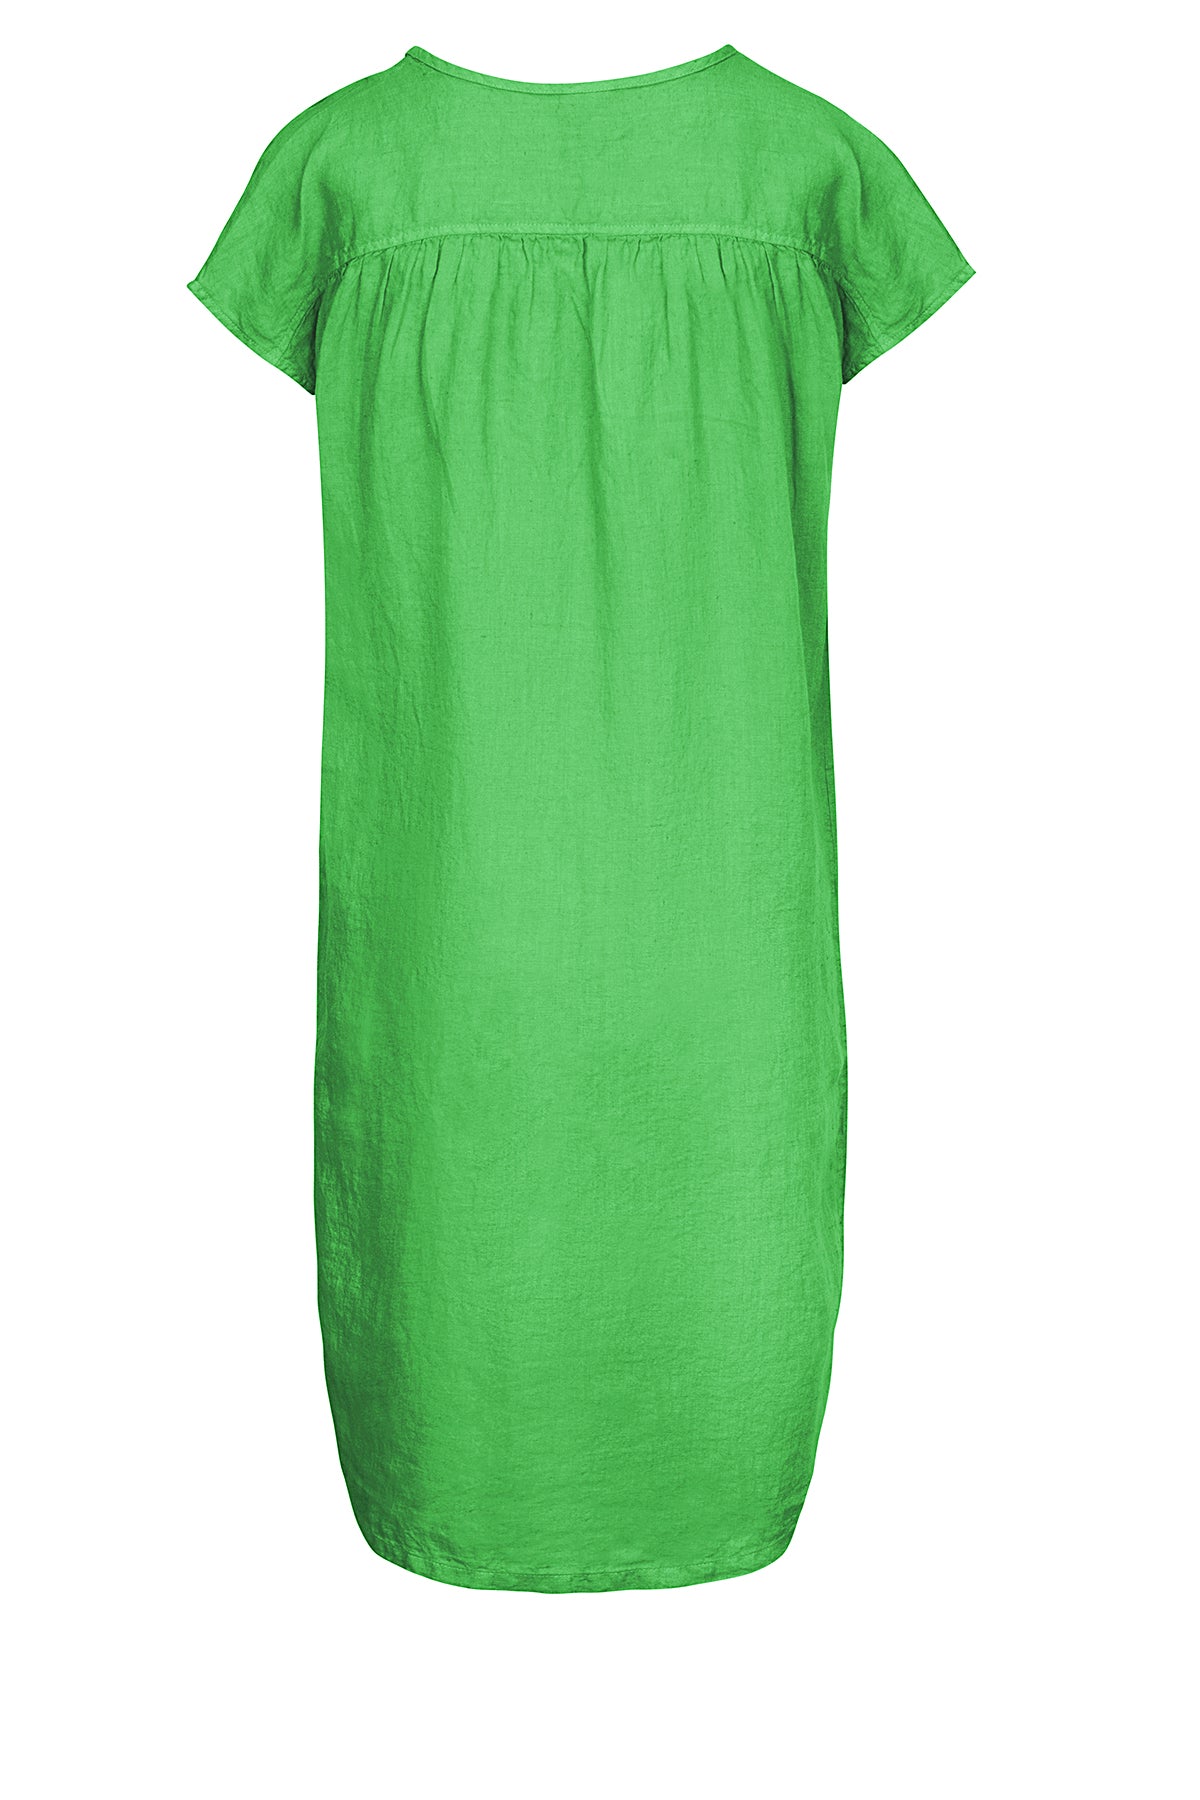 LUXZUZ // ONE TWO Karla Dress Dress 623 Kelly Green